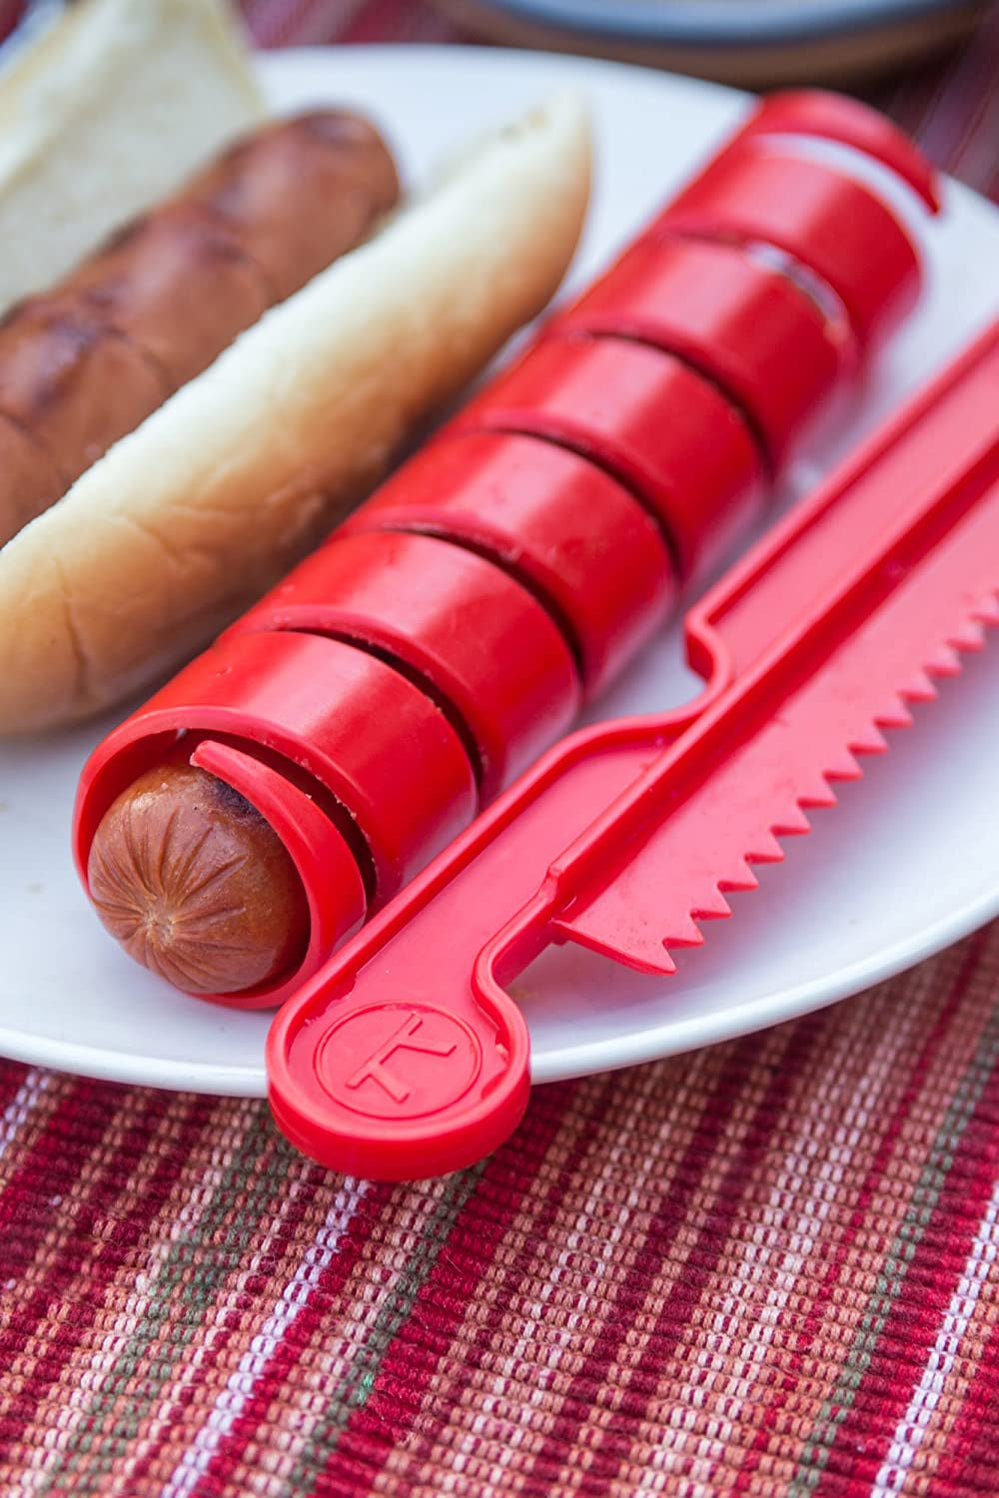 hot dog slicer for kids